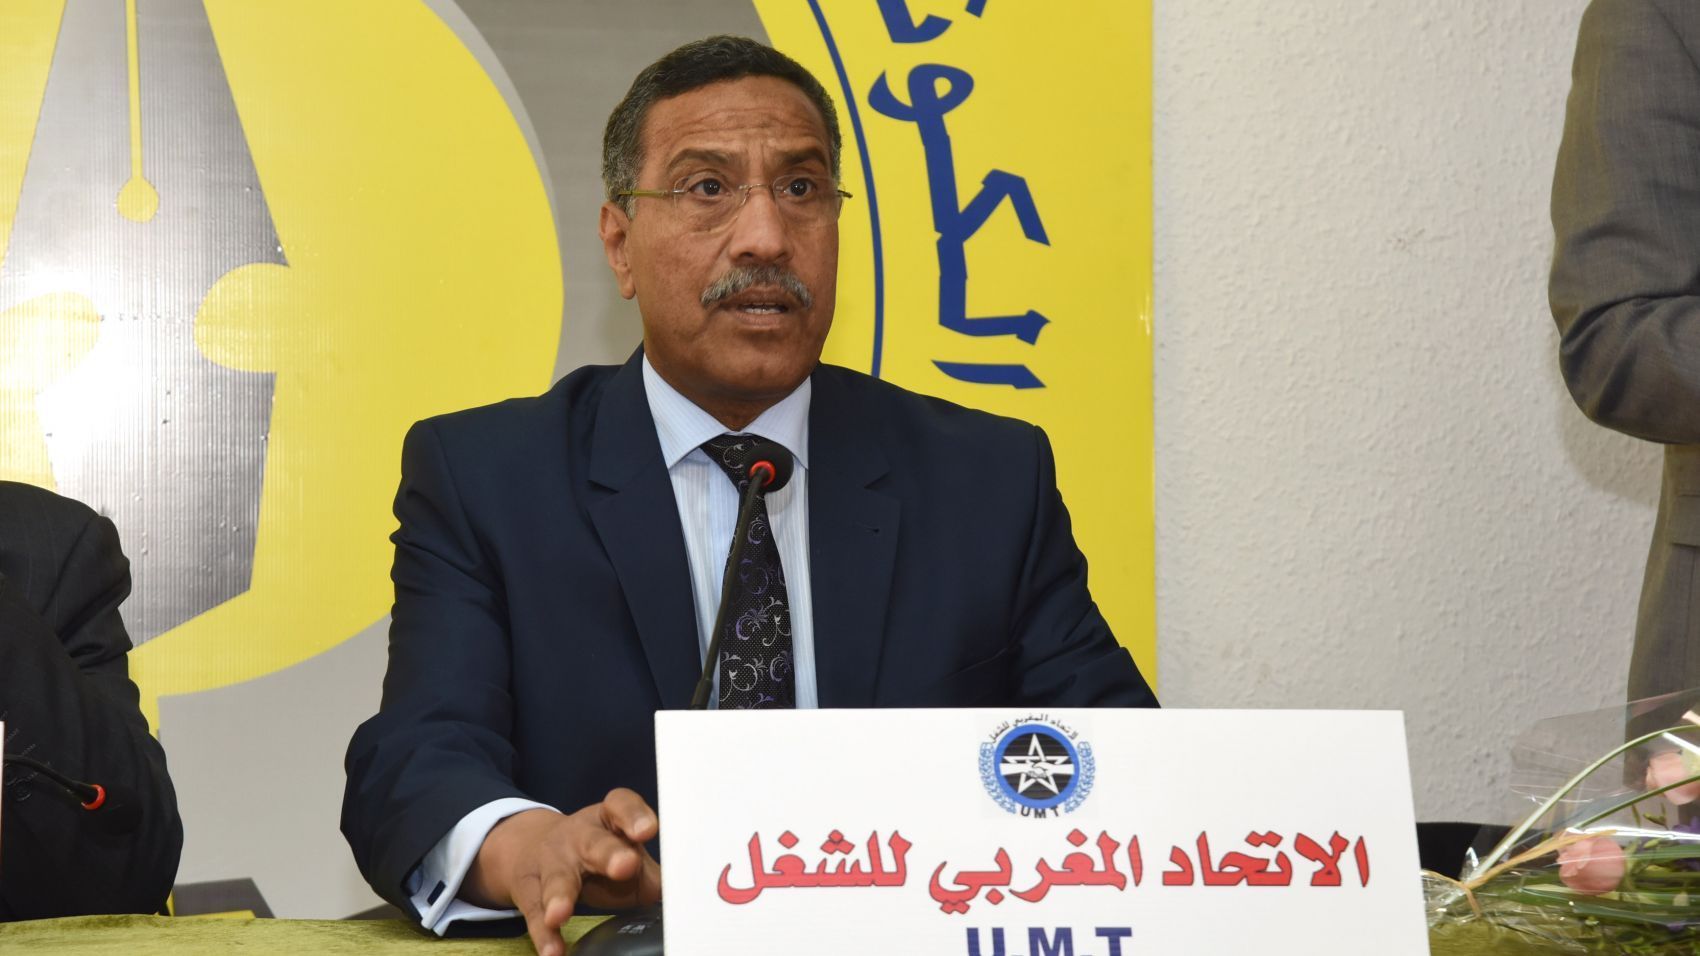 الاتحاد المغربي للشغل ينسحب من جلسة التصويت على رئيس المستشارين